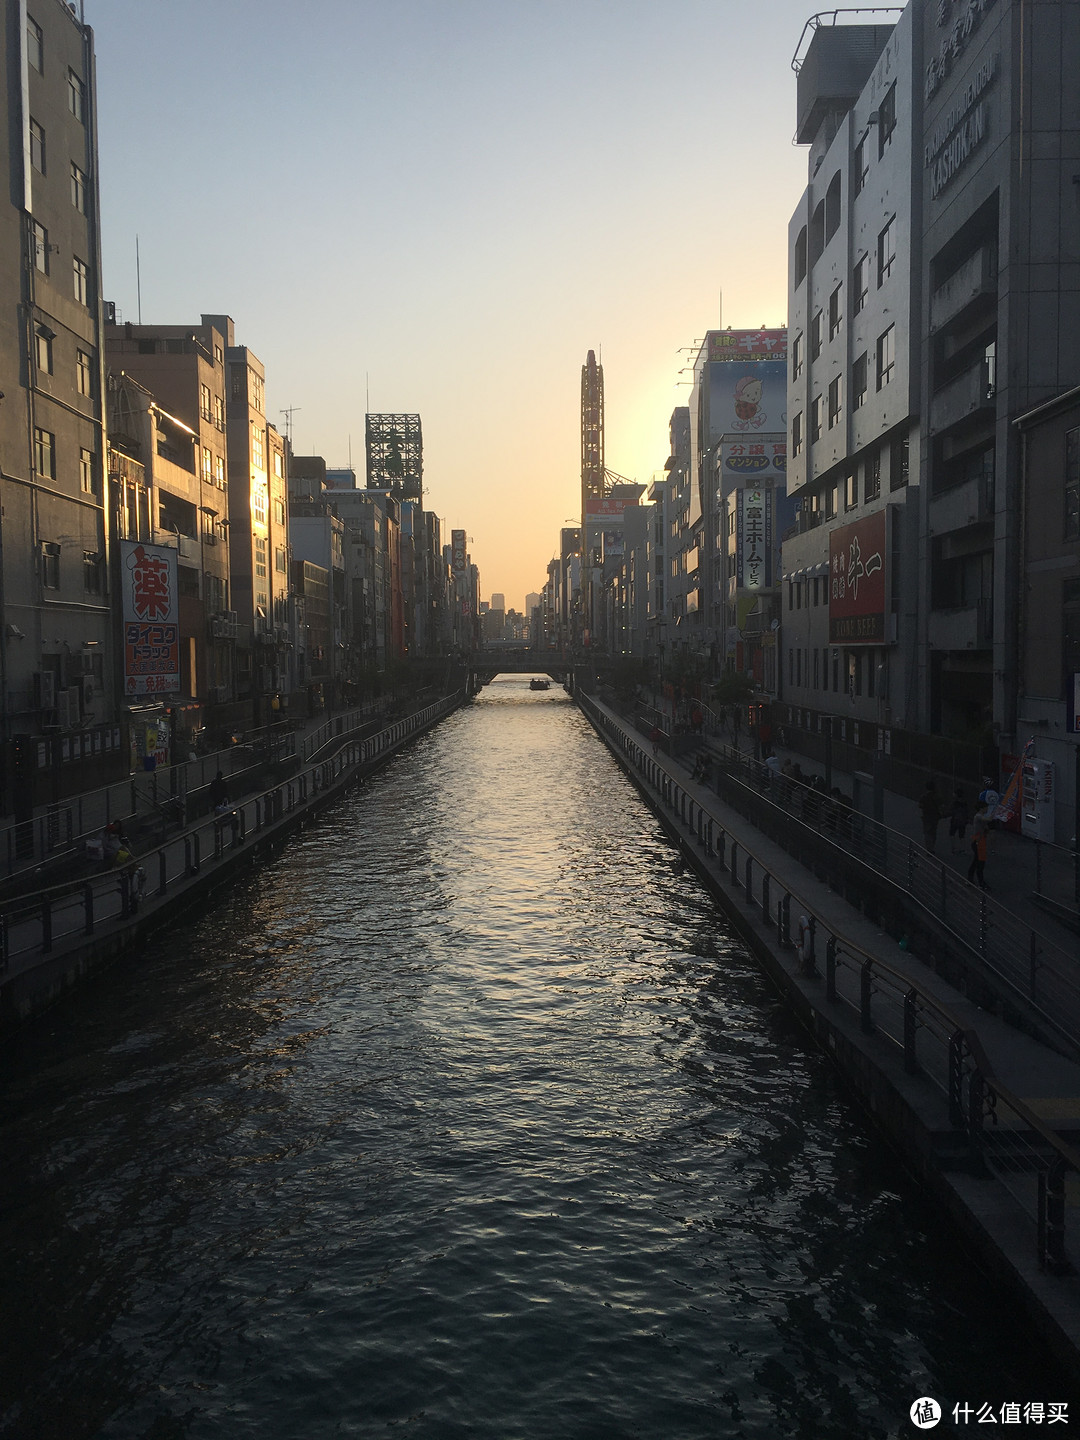 遇见日本之美，东京、名古屋、大阪、京都、奈良。